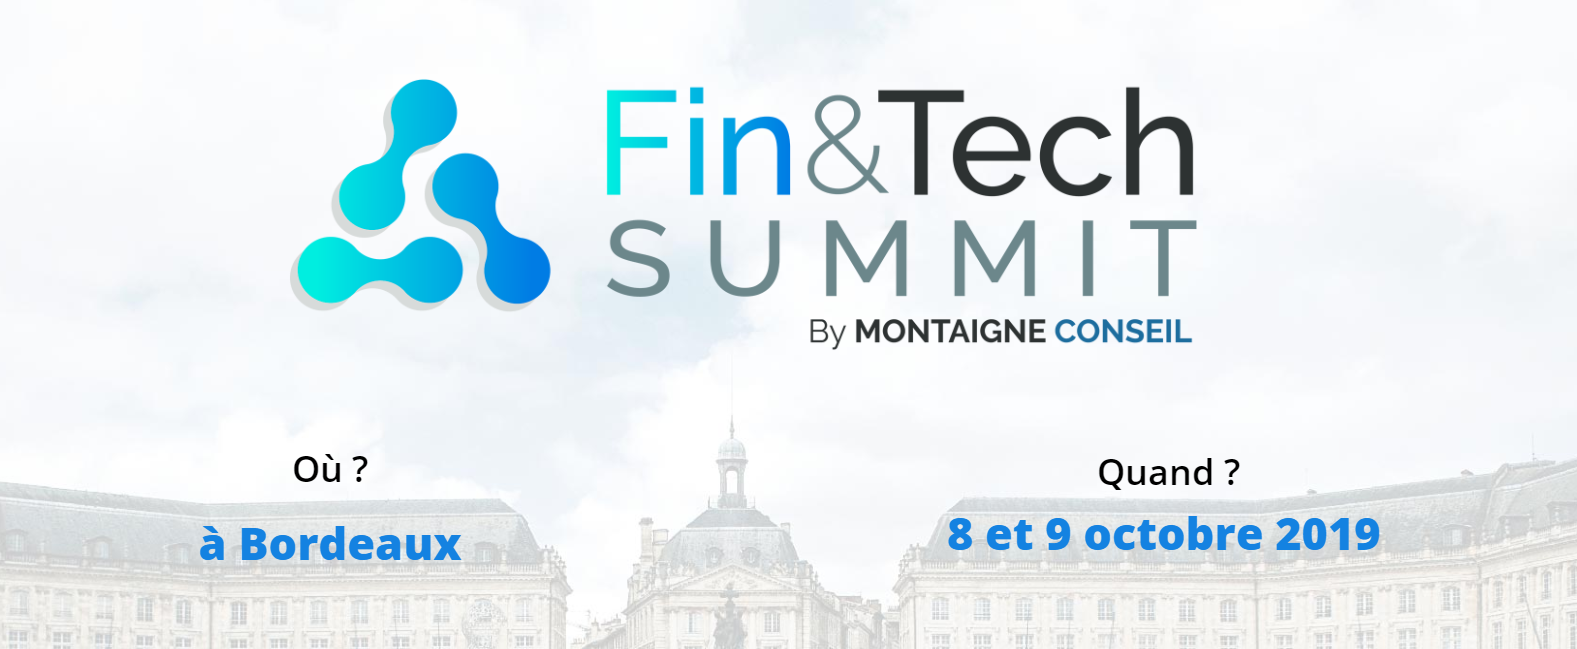 Événement fintech 2019 - Fin&Tech Summit